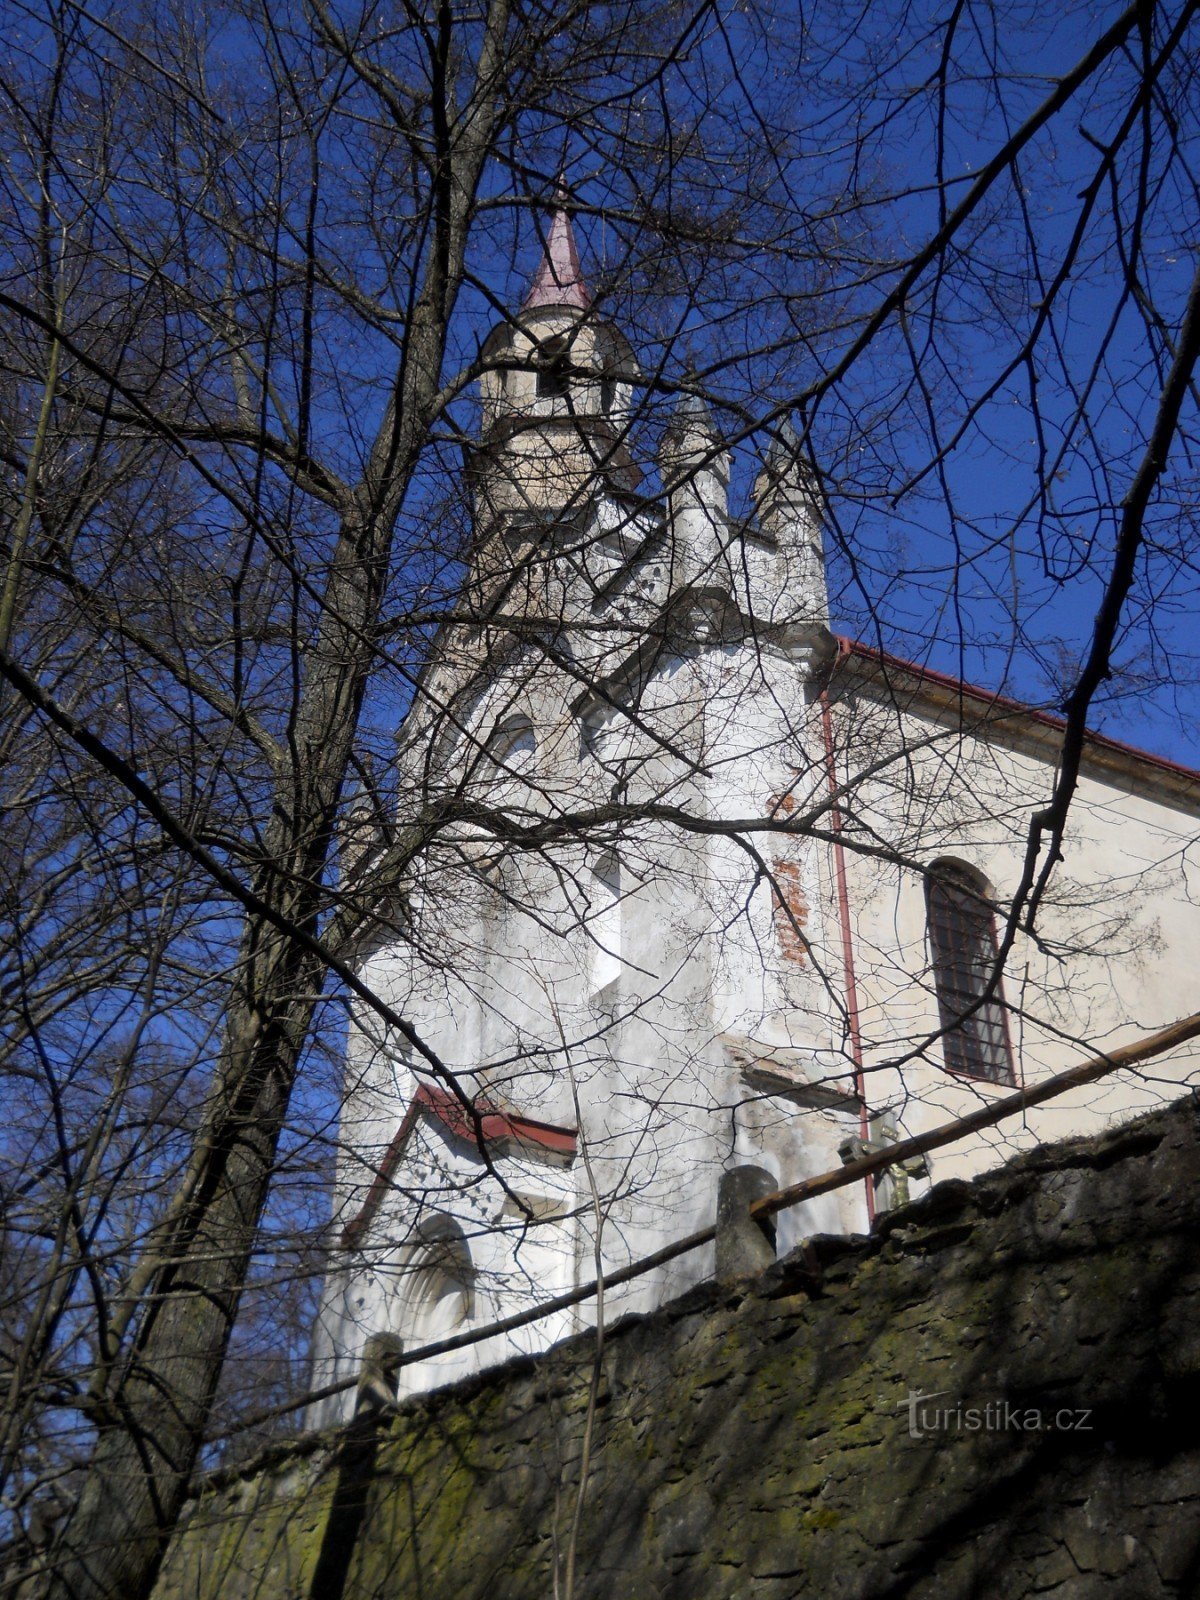 Cizkrajov - nhà thờ hành hương Đức Mẹ Montserrat